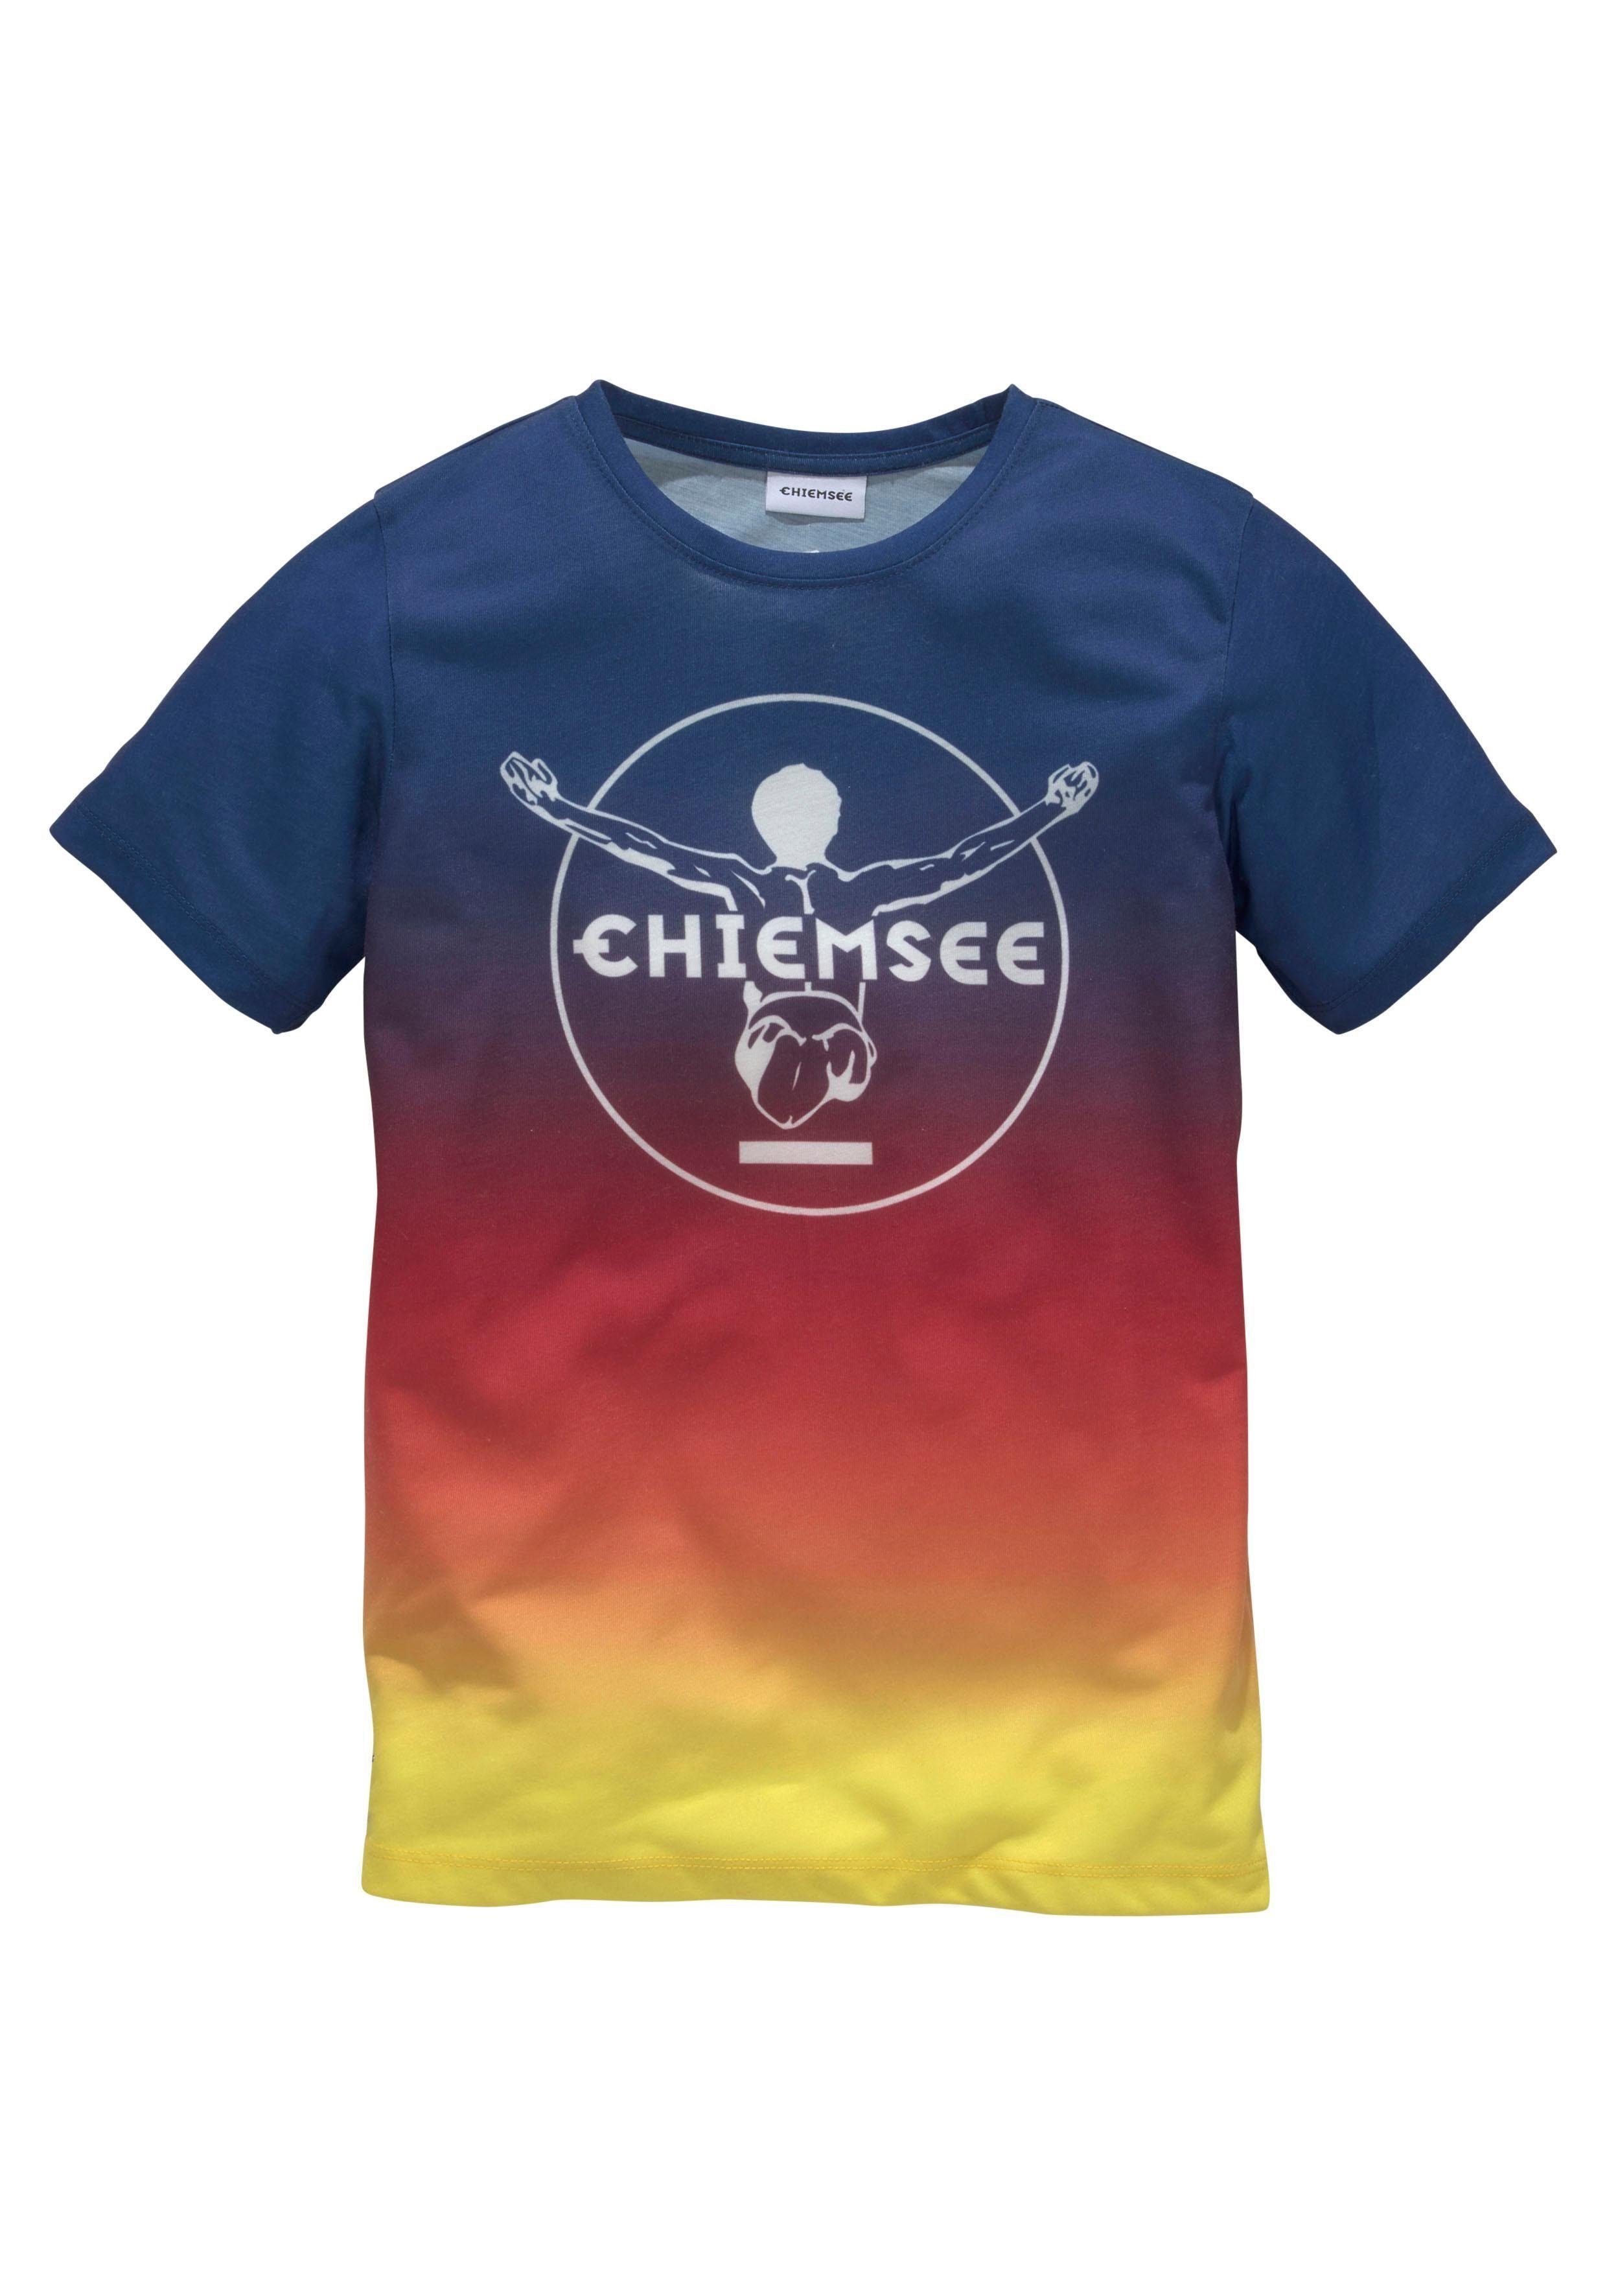 Chiemsee mit T-Shirt im vorn Farbverlauf Druck